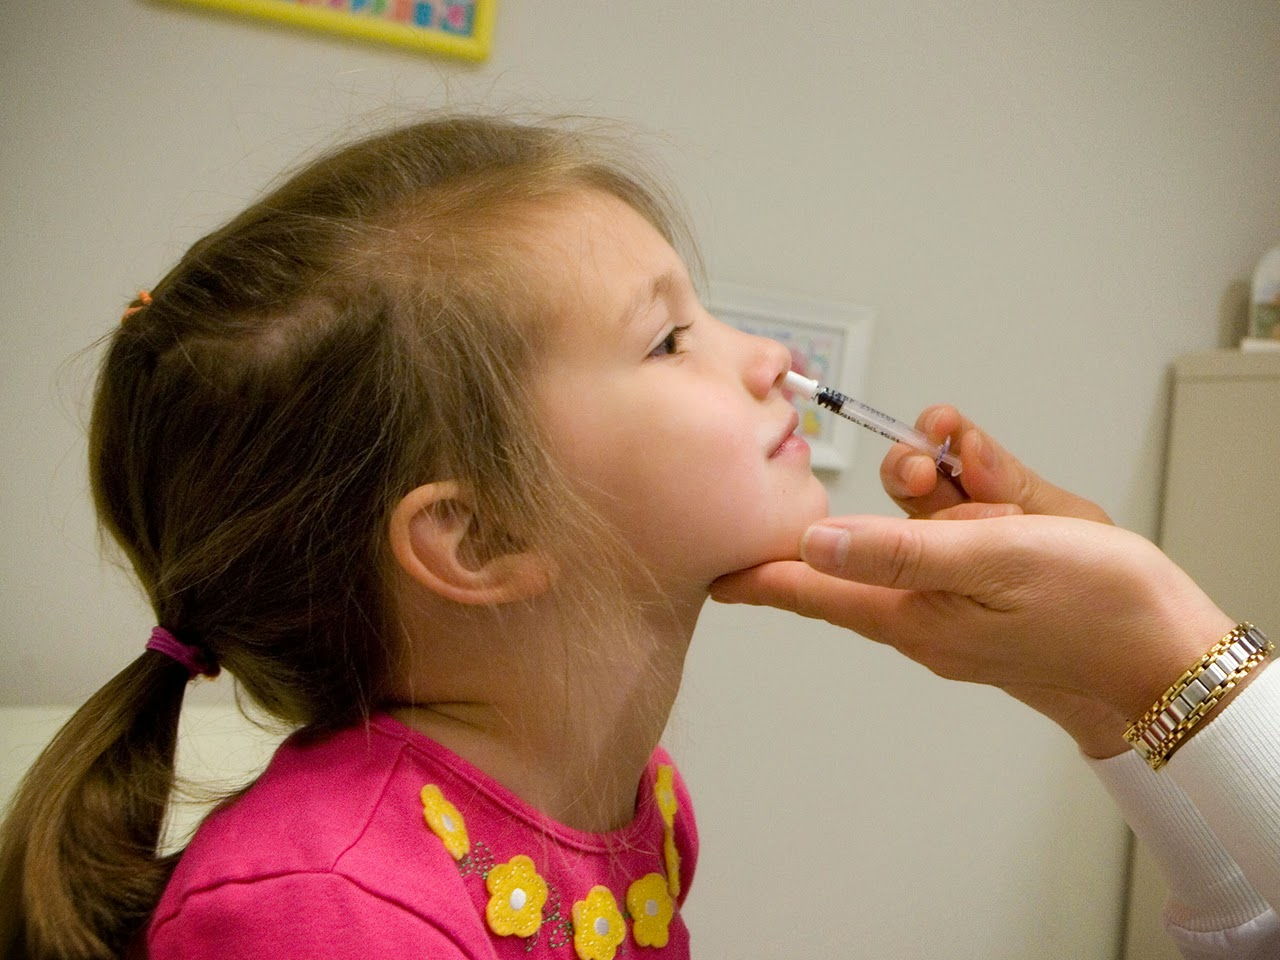 Mẹ có thể nhỏ nước muối cho bé để chữa nghẹt mũi khi bé bị cảm cúm